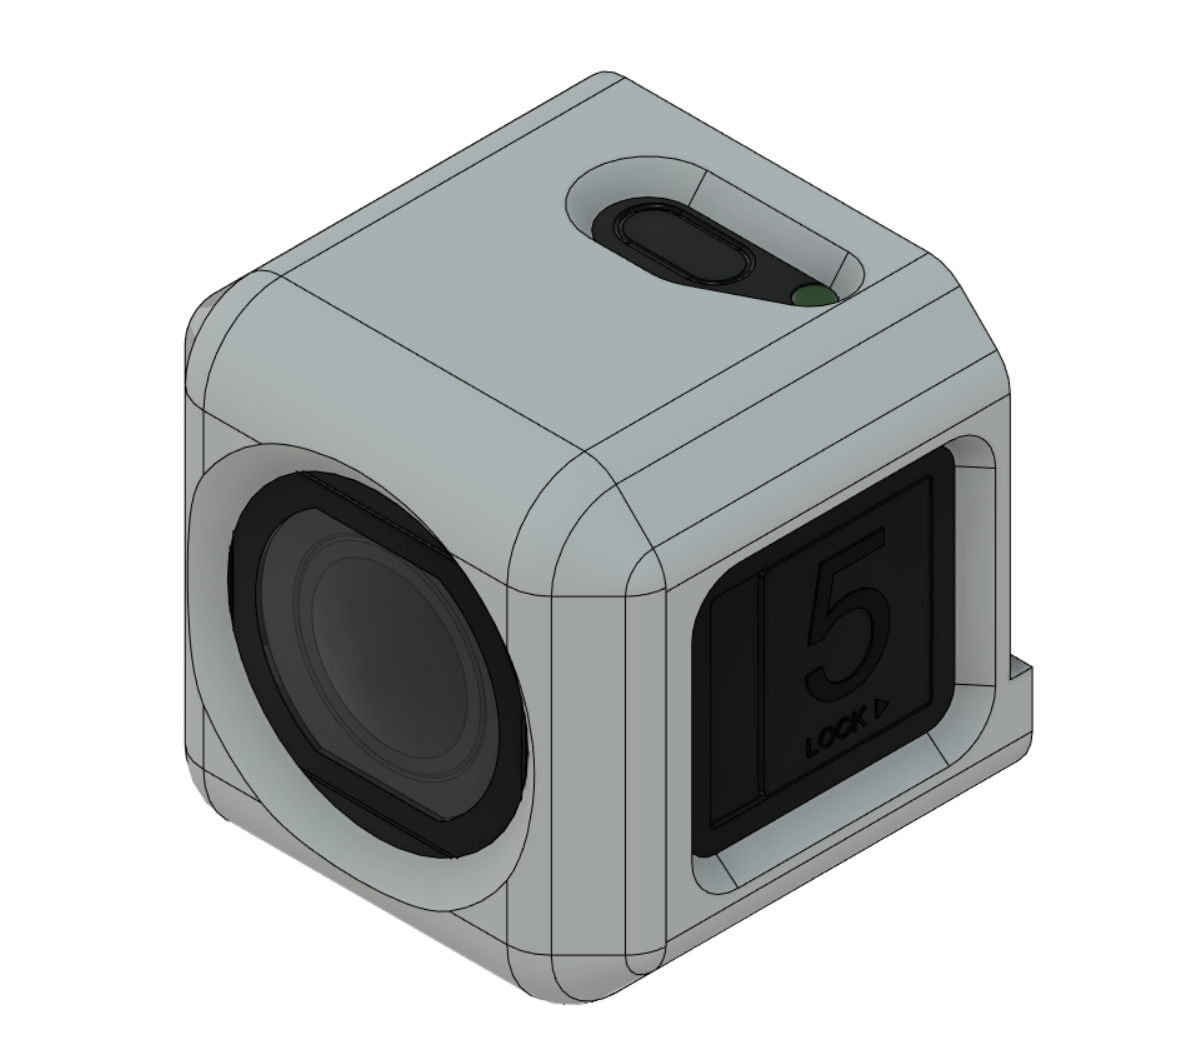 Runcam 5 (HD recording camera) shell